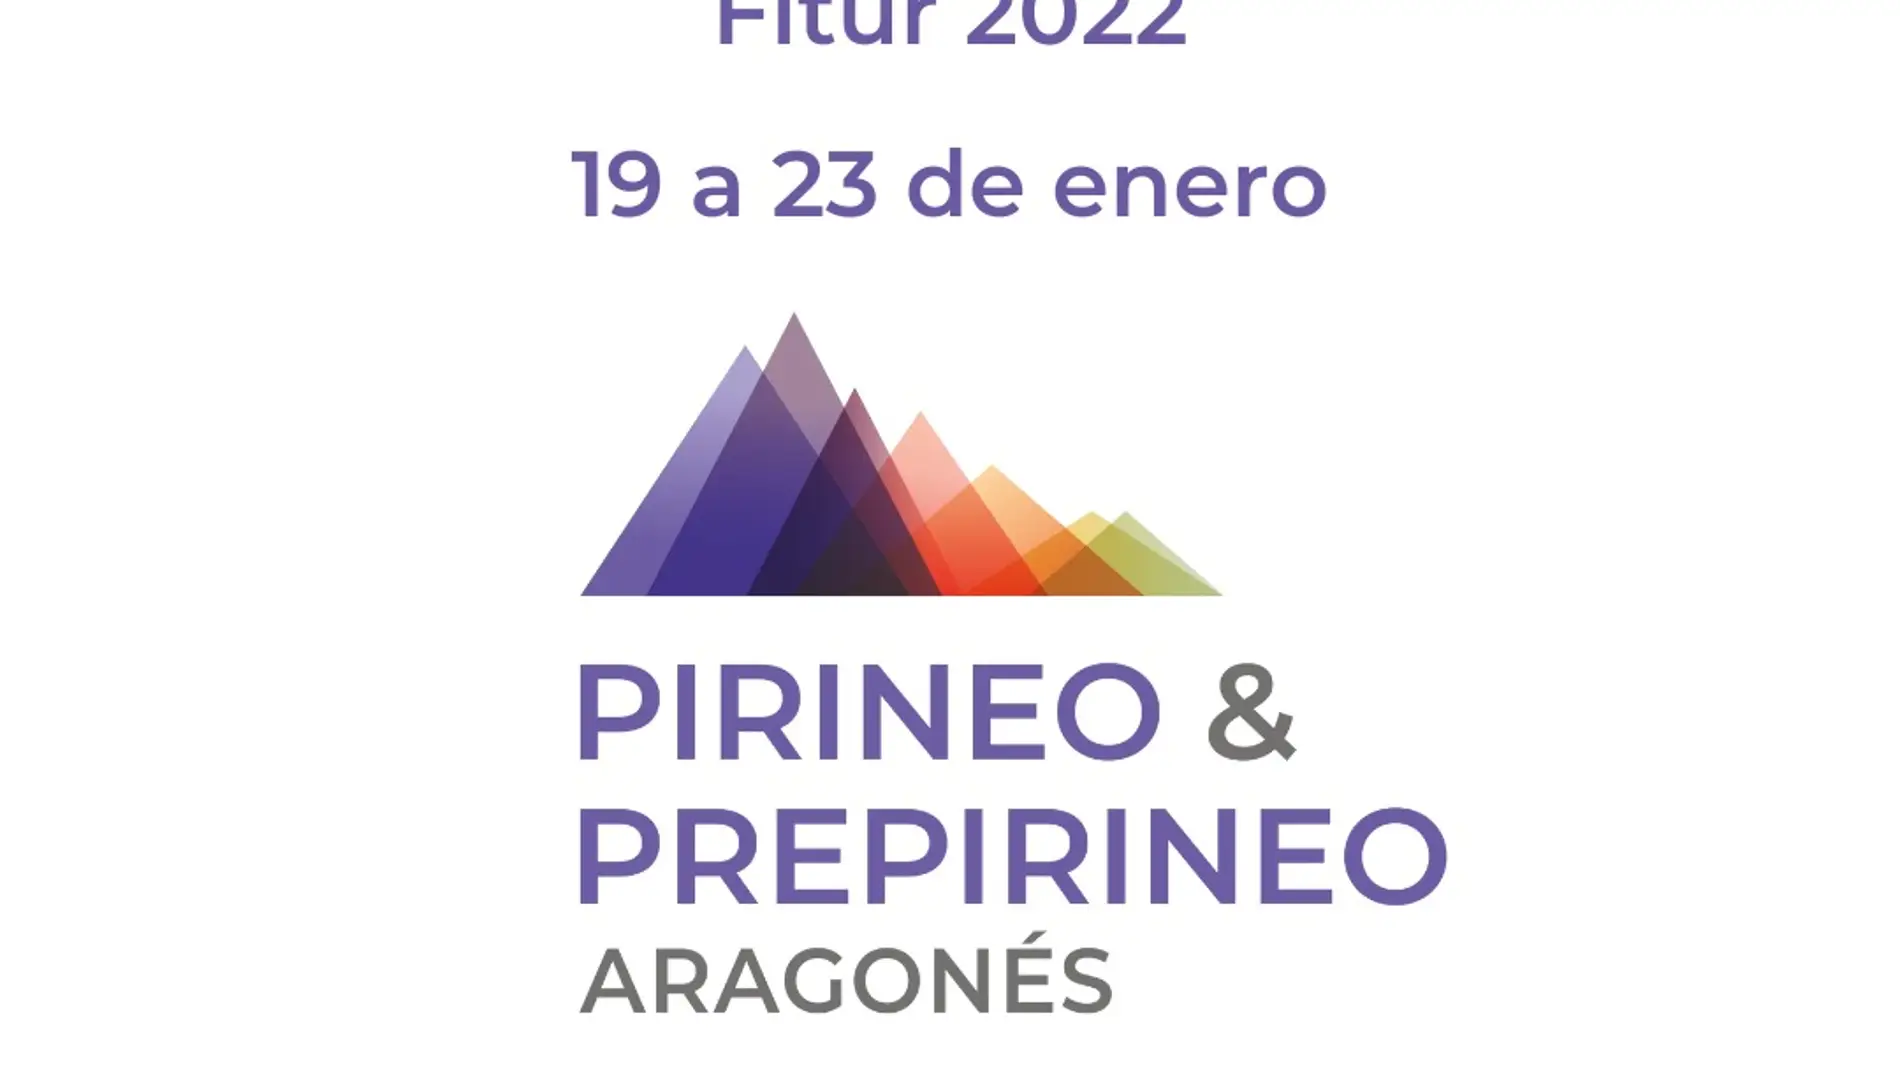 Las comarcas del Pirineo y Prepirineo, juntas en Fitur